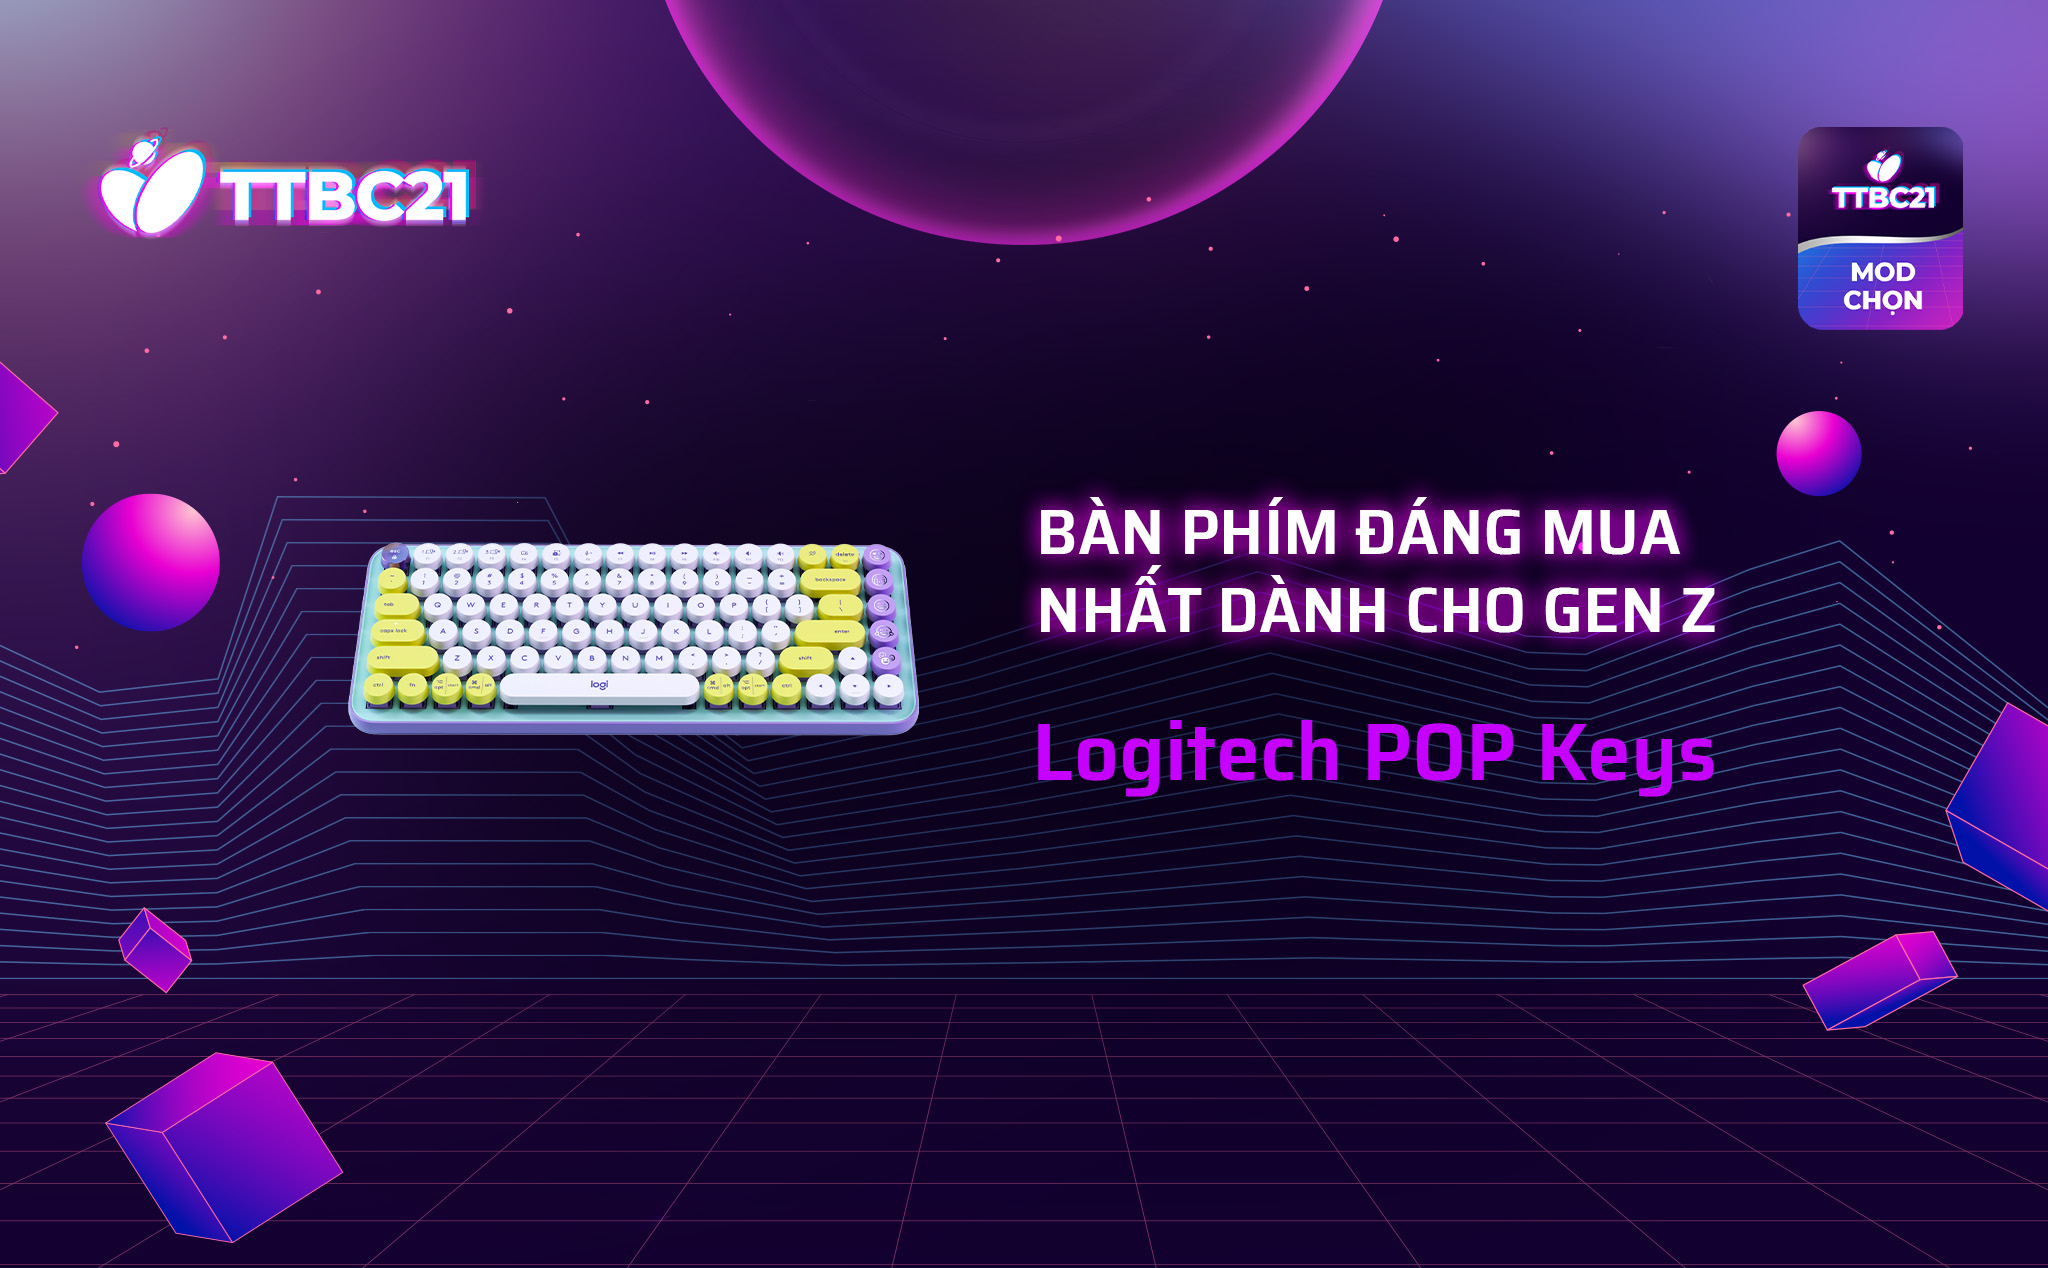 TTBC21 - Mod Choice: Logitech POP Keys - Bàn phím đáng mua nhất dành cho gen Z